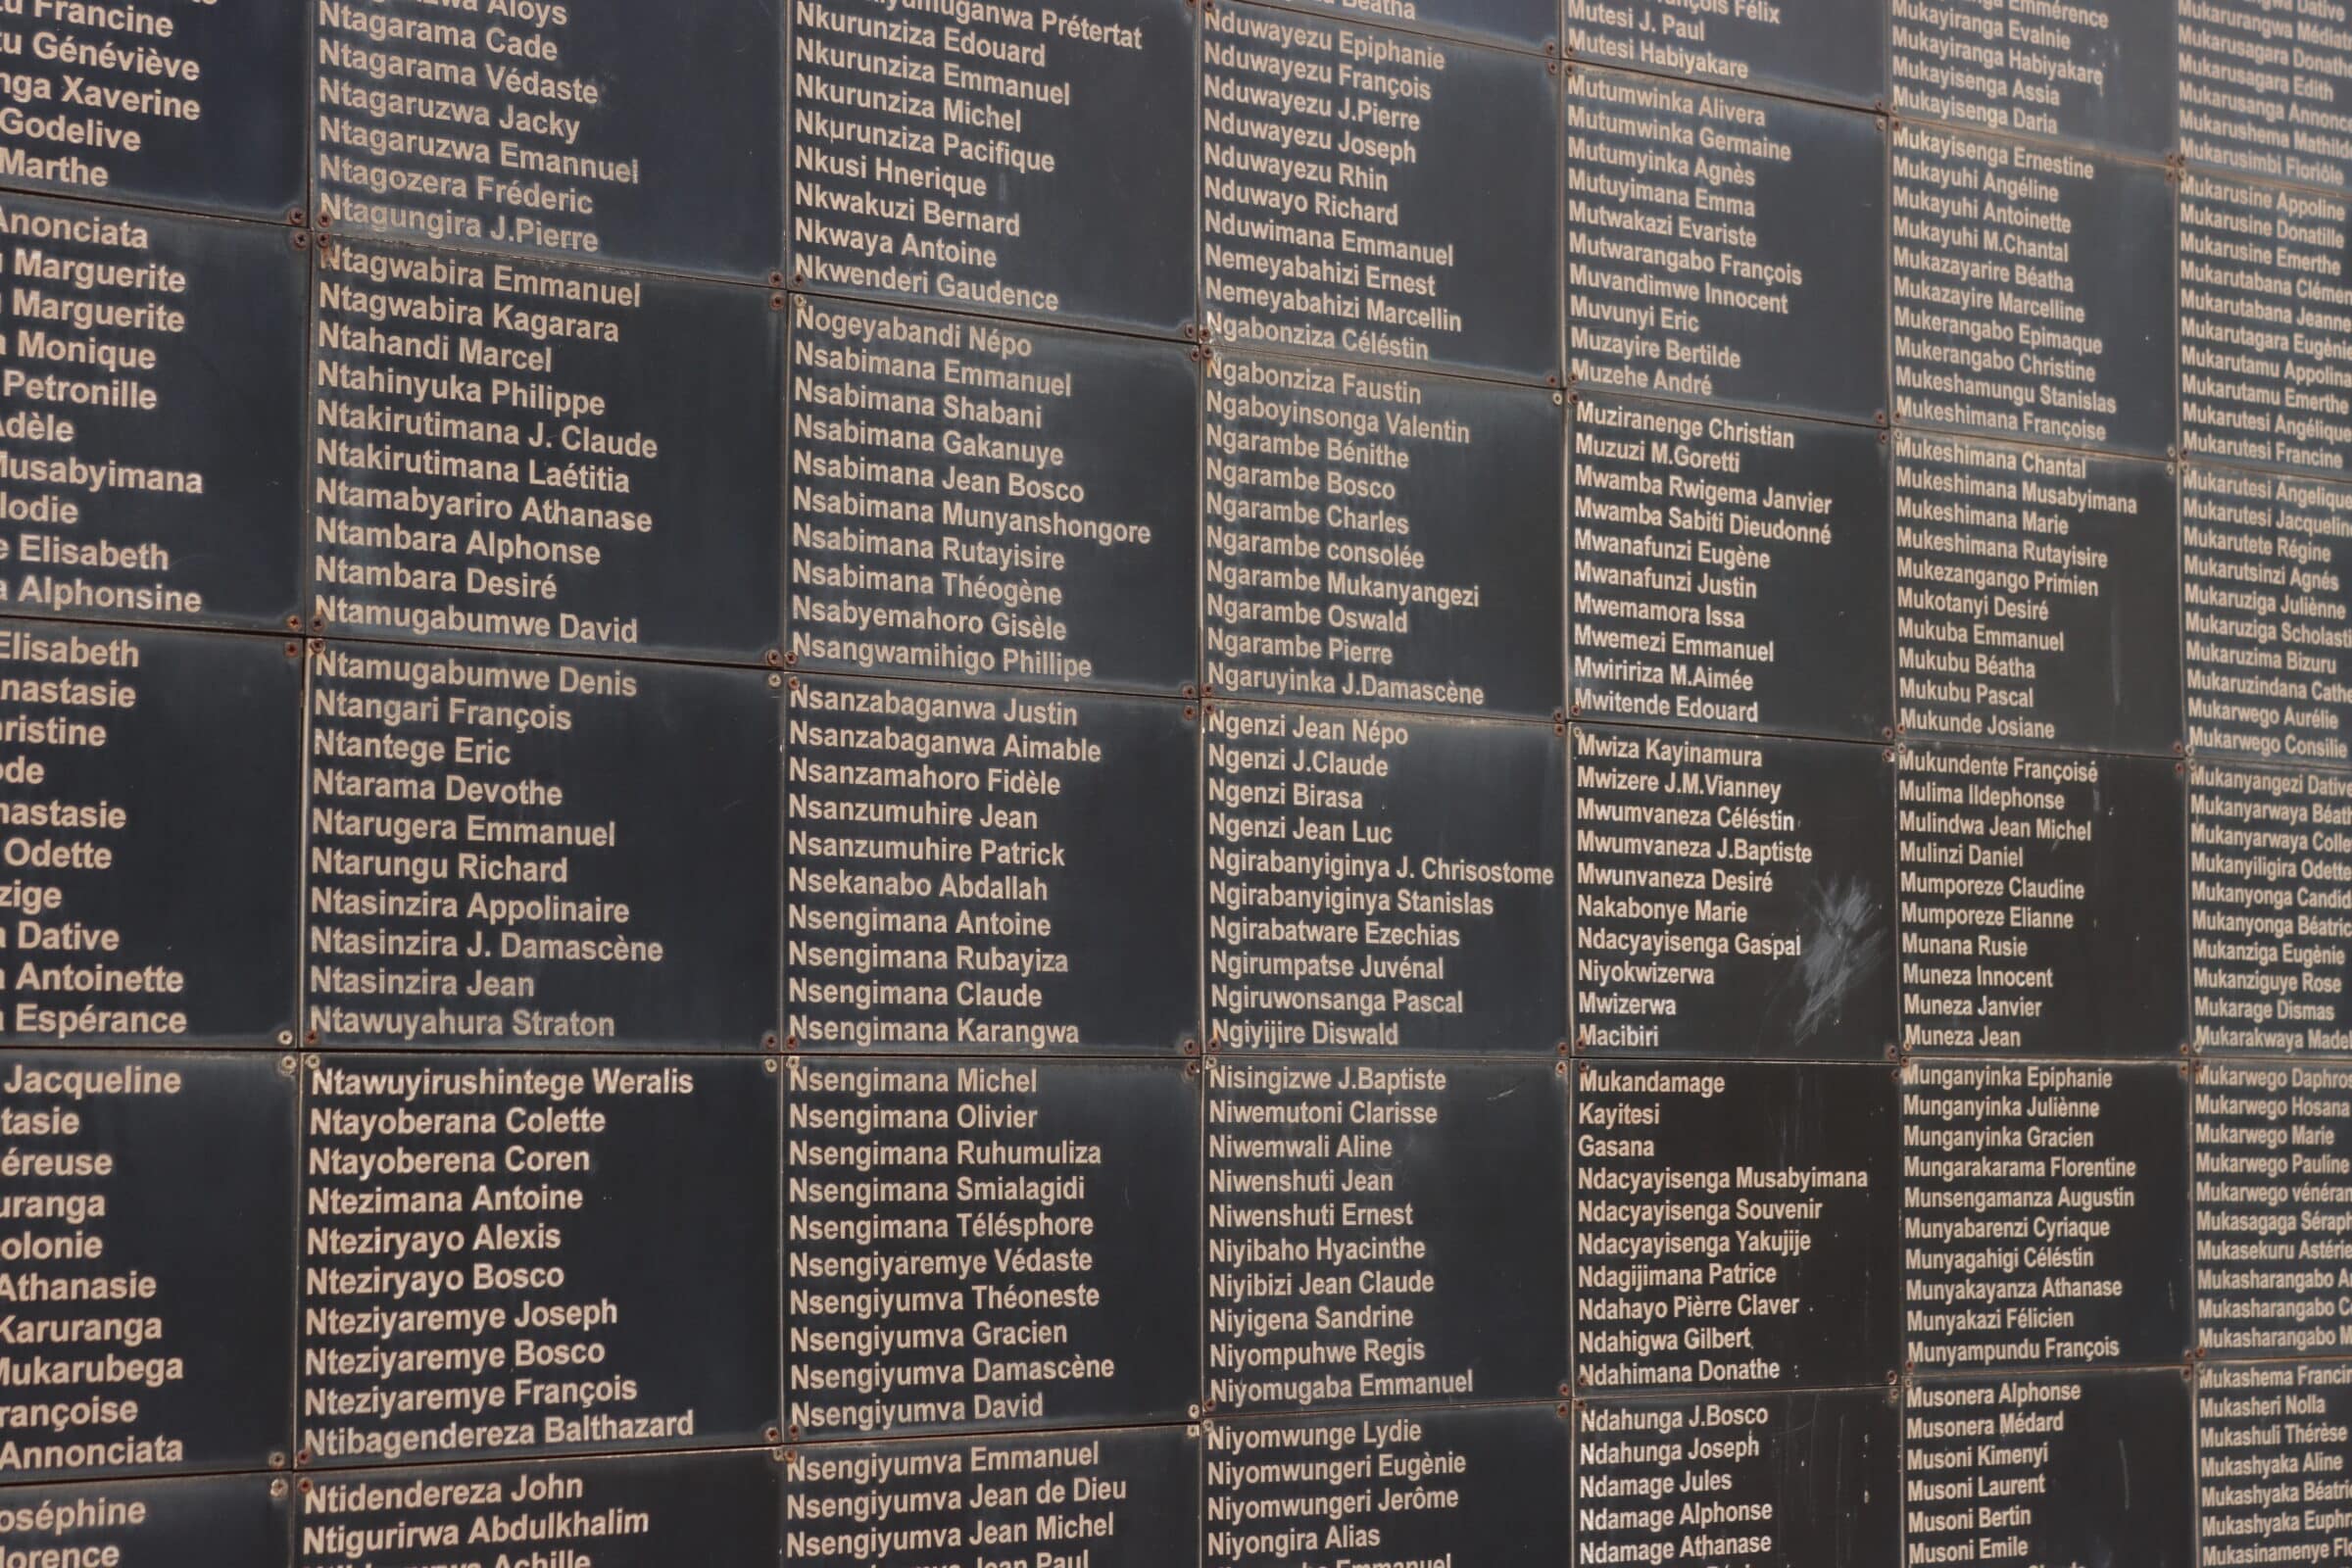 Namen van de slachttoffers van de Genocide in 1994